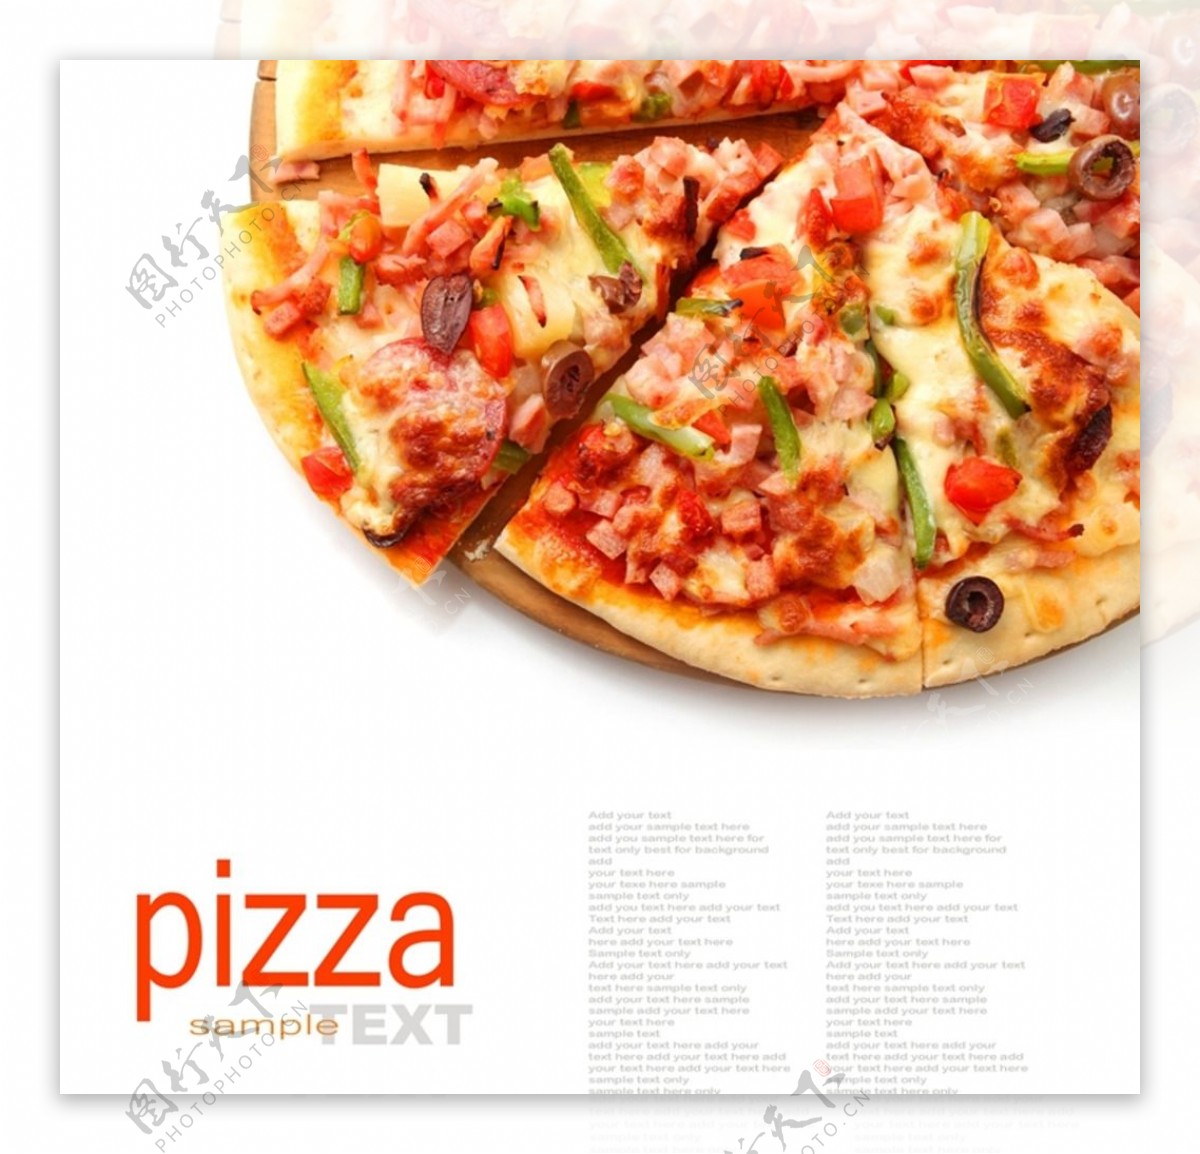 西餐快餐披萨PIZZA图片